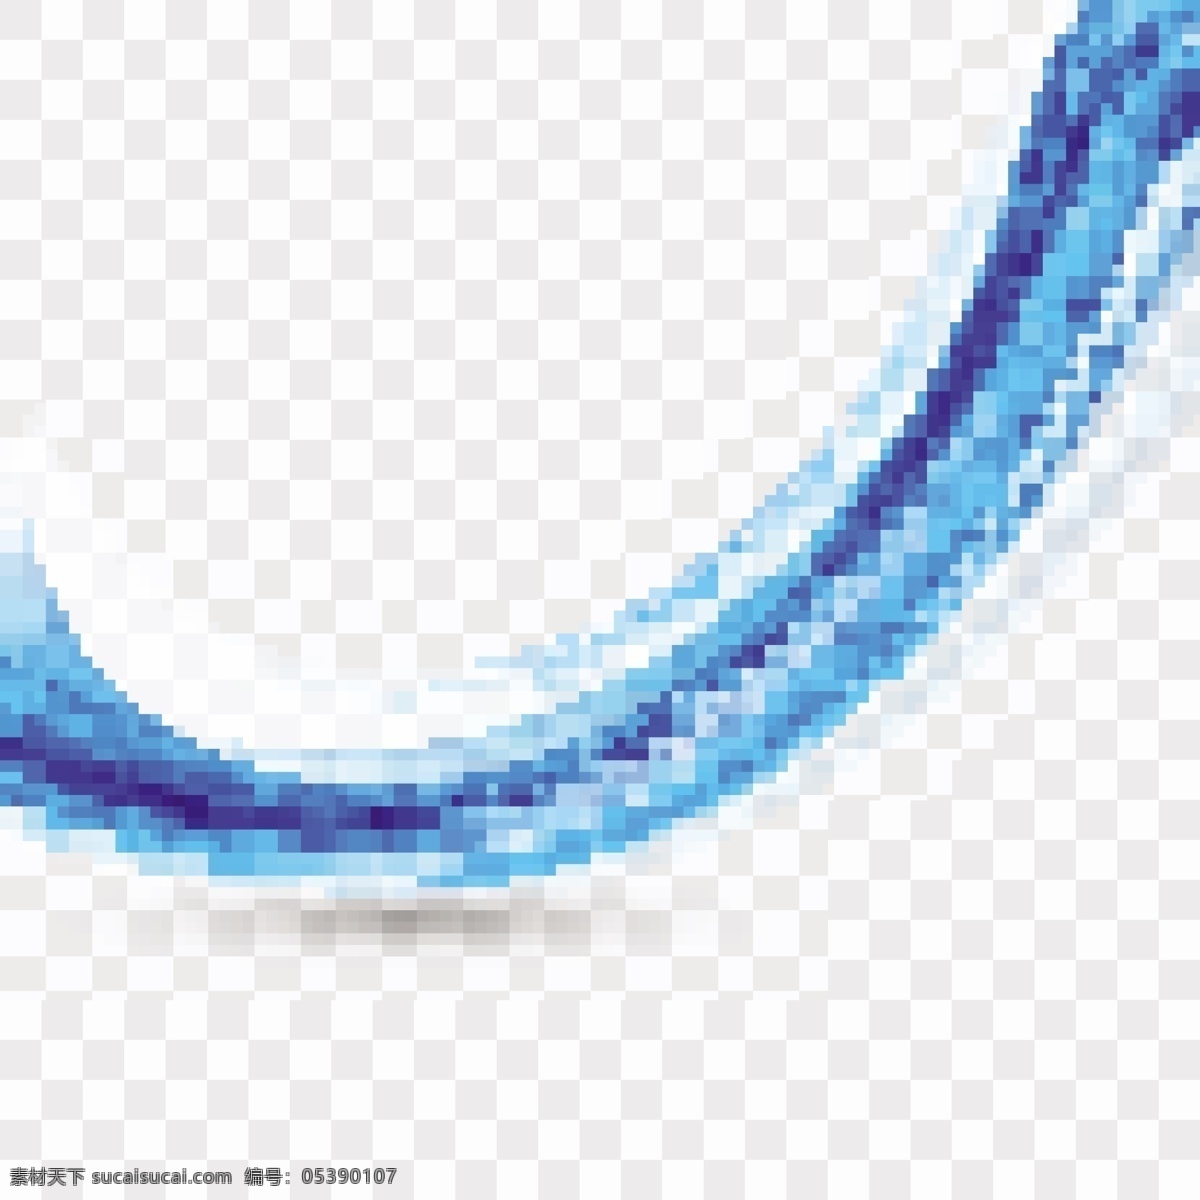 蓝色浮动波 背景 抽象 模板 波浪 蓝色 形状 烟雾 现代 抽象的形状 波浪状 柔软 有光泽 浮动 波浪背景 环境 波浪形